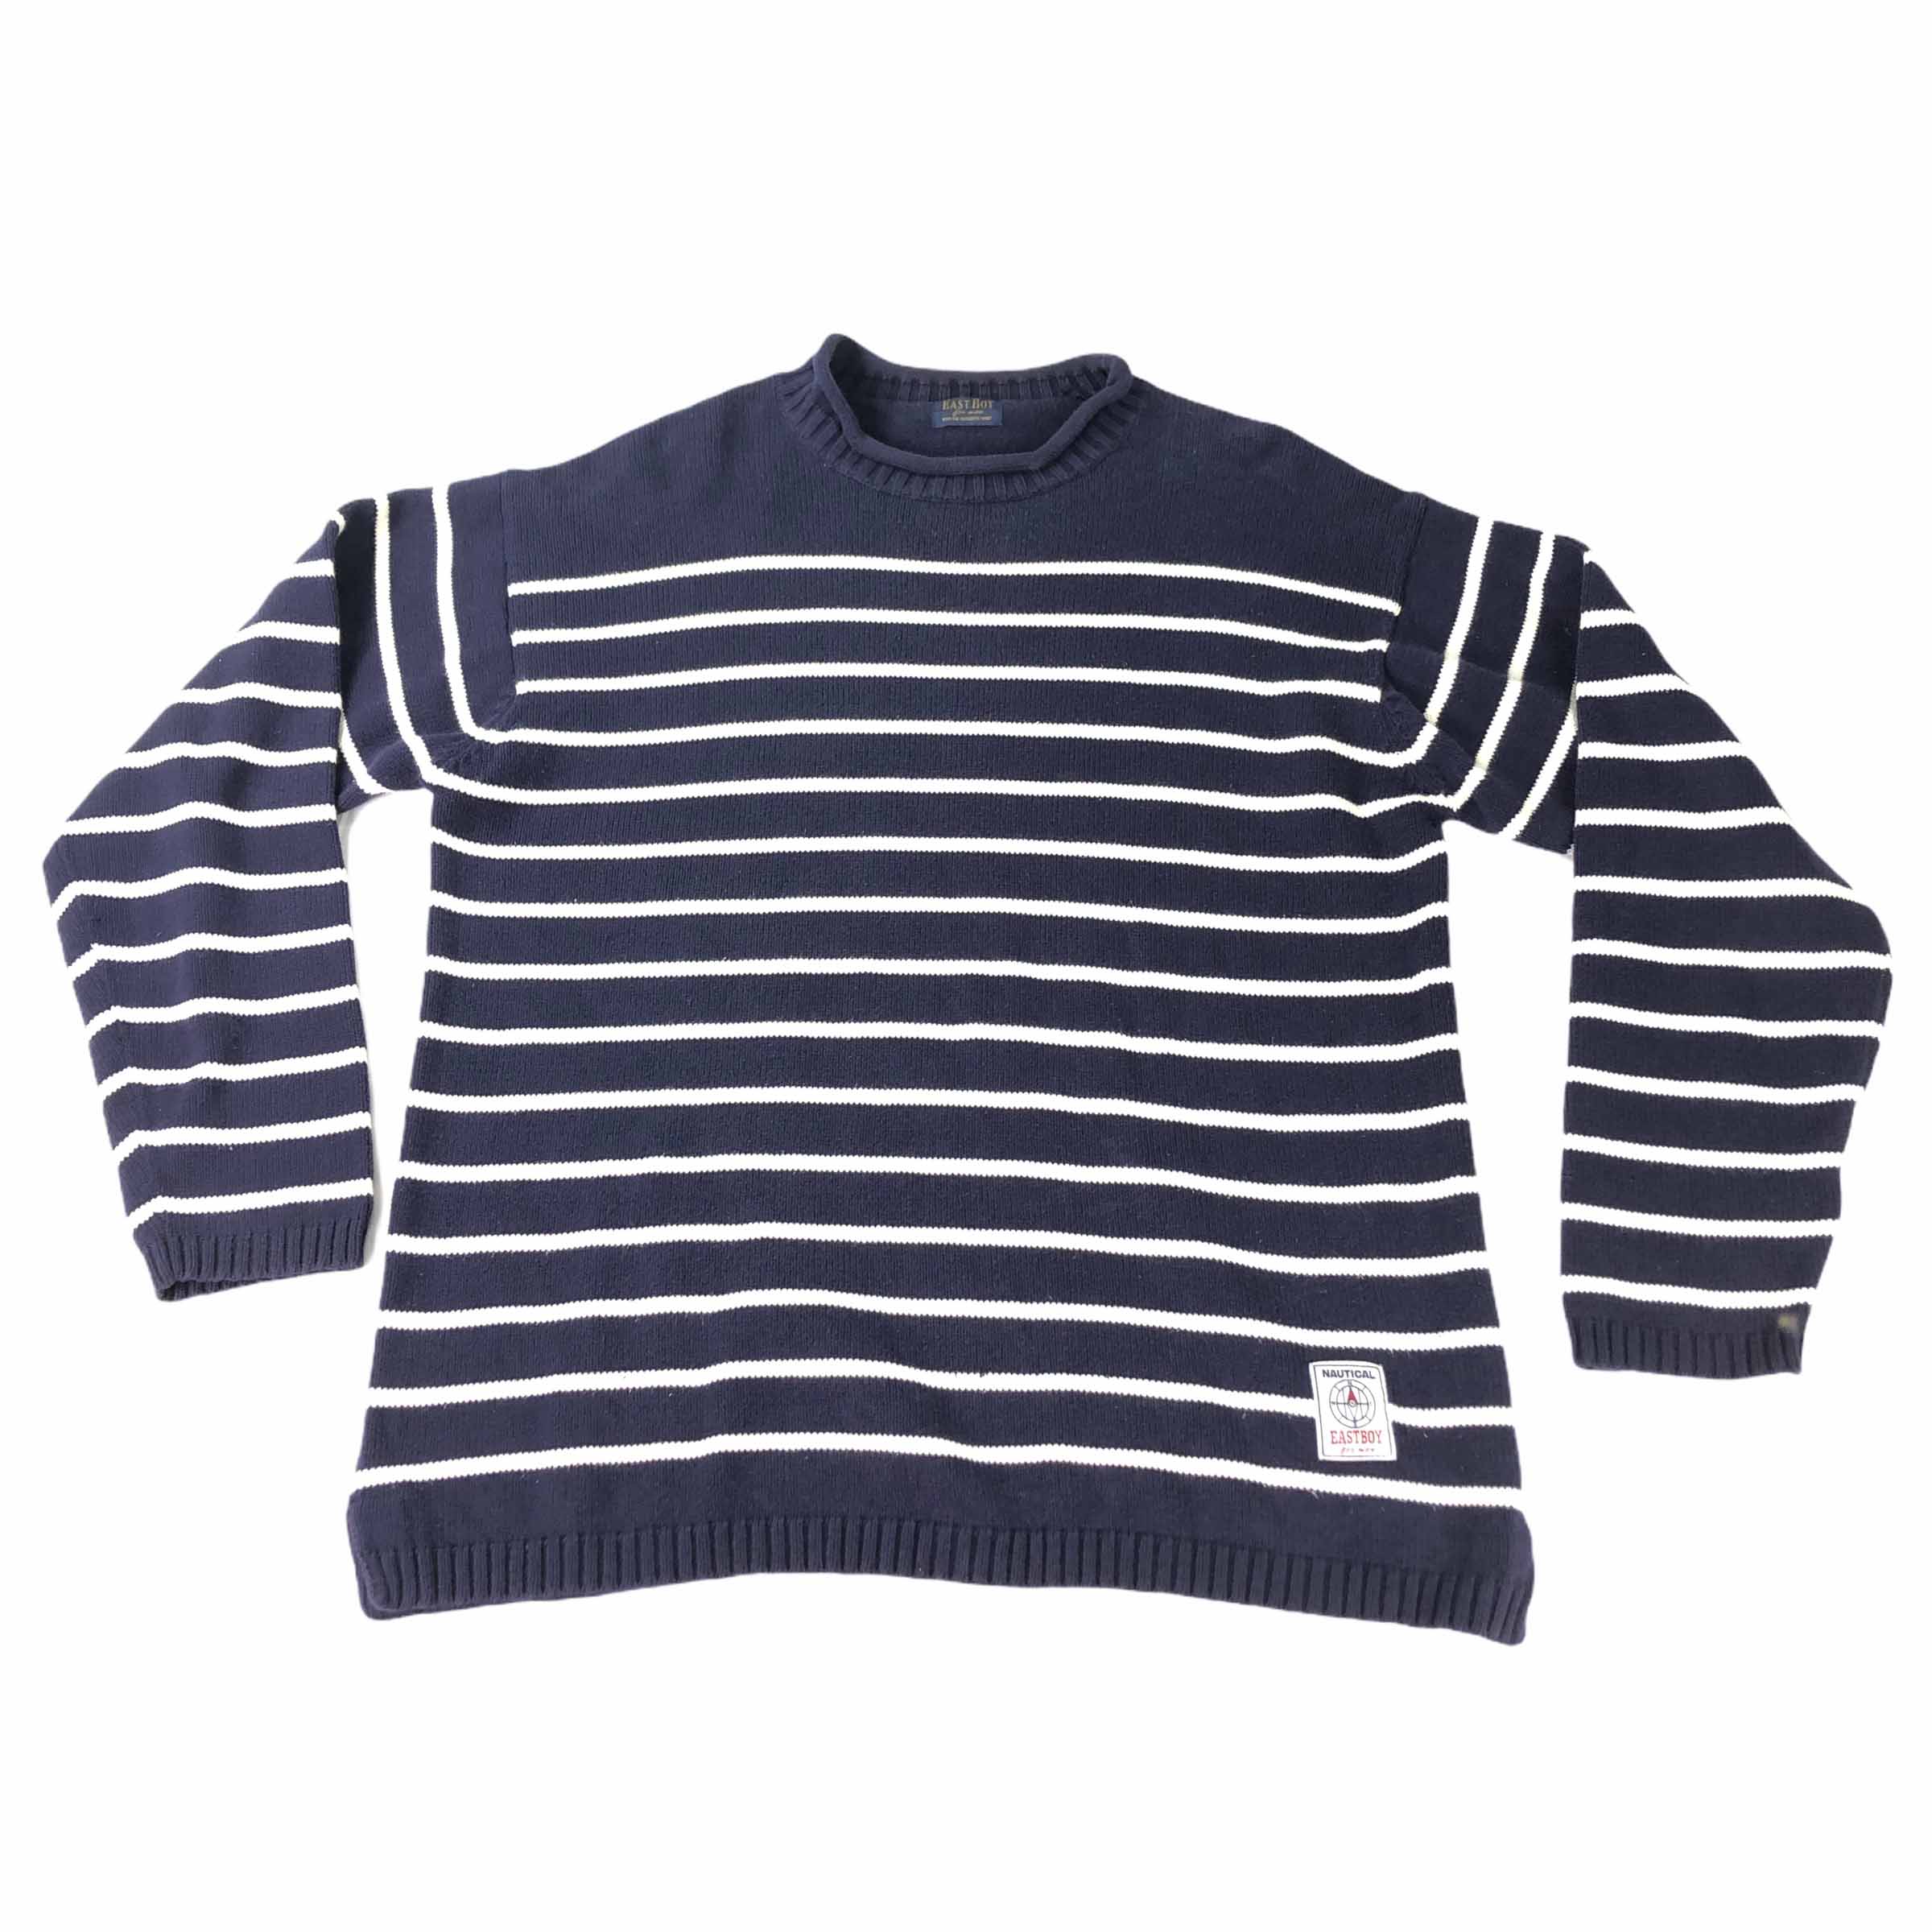 [East Boy] Stripe Knit Longsleeve - Size Free